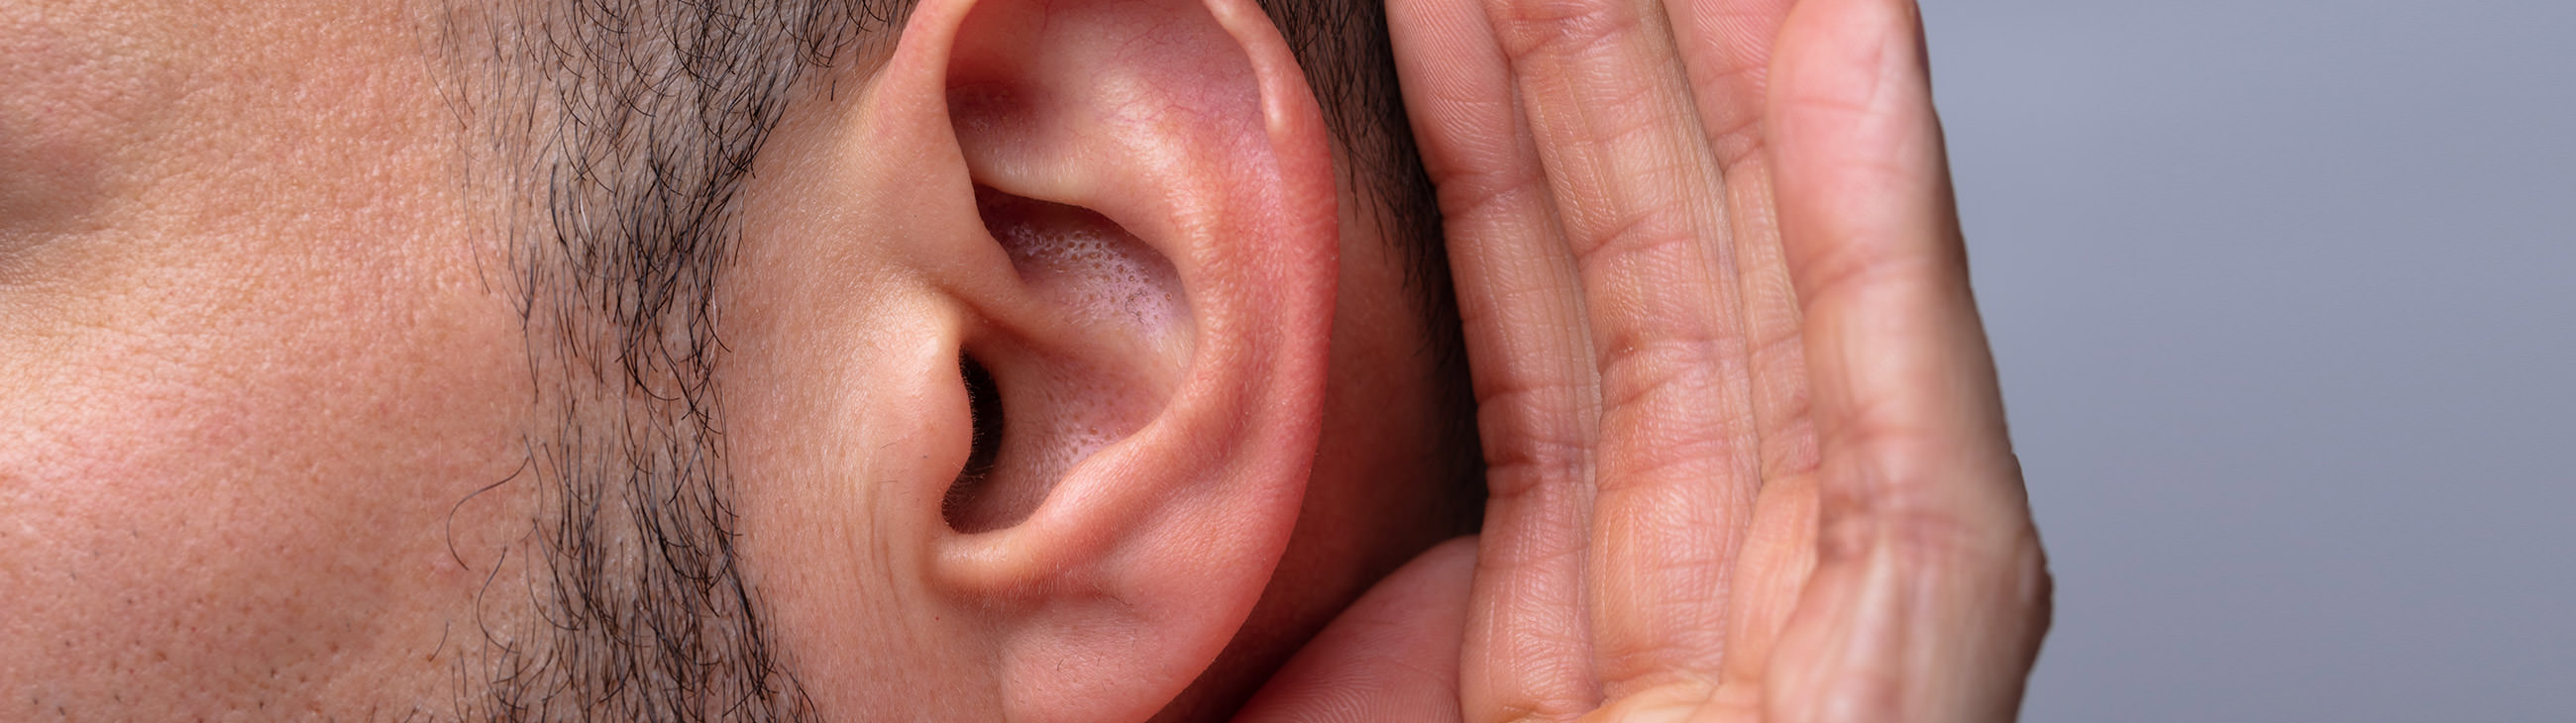 Eczema on the ears